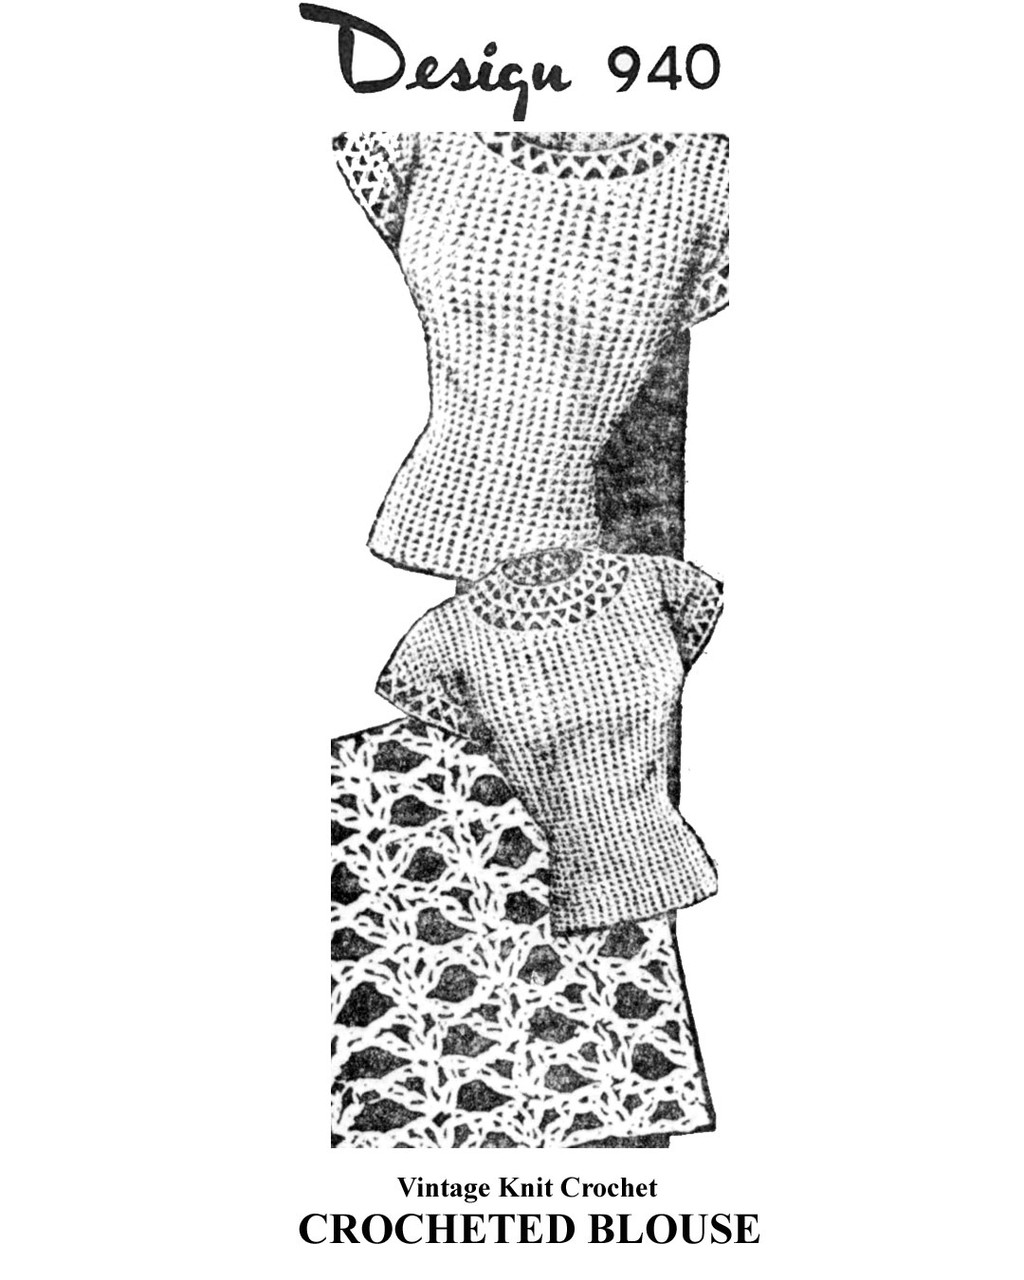 Vintage Crochet short sleeve top pattern, mail order design 940